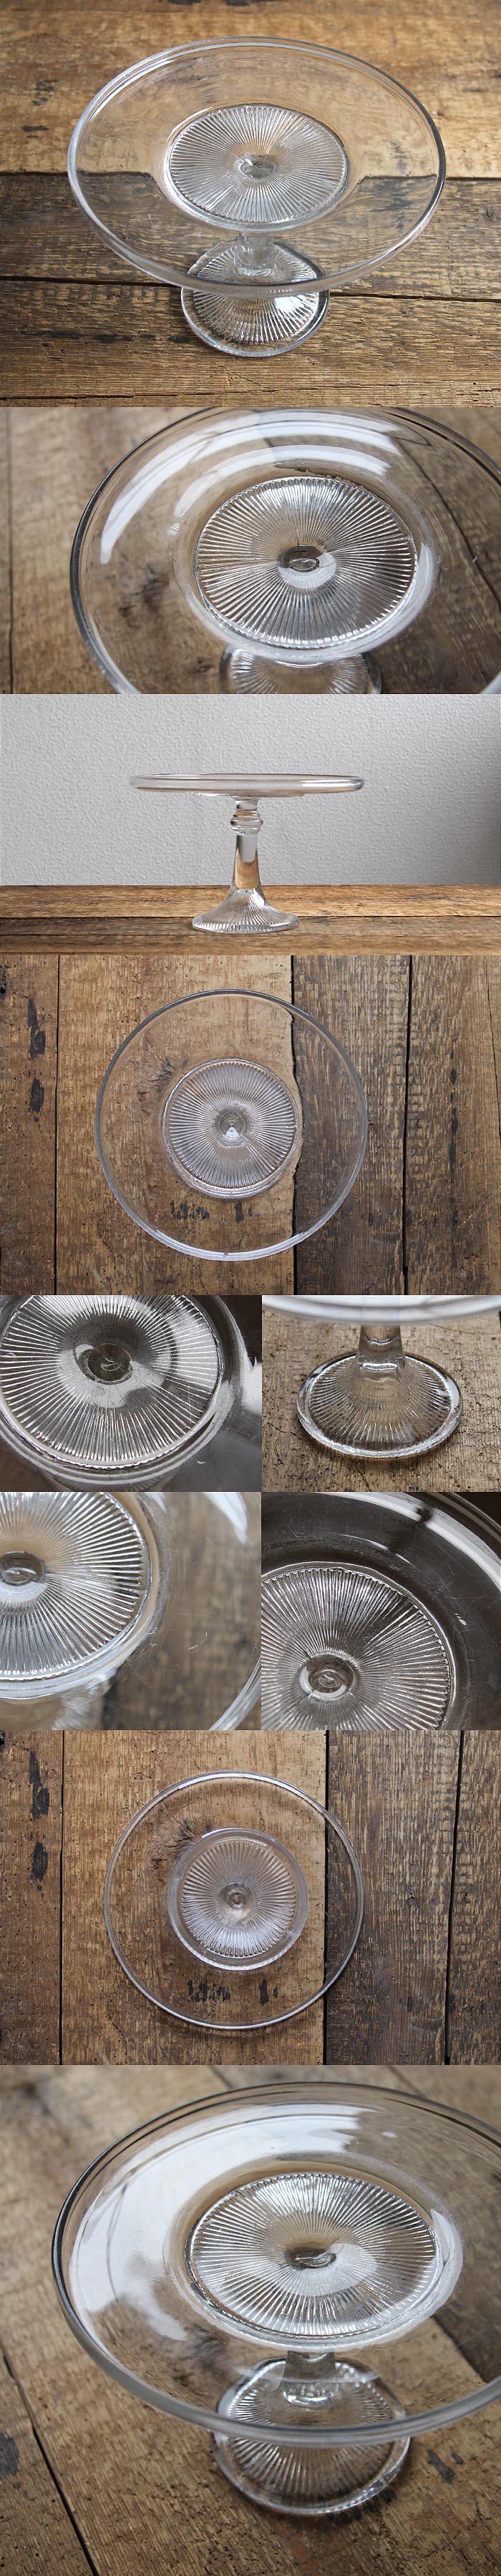 イギリス アンティーク ケーキスタンド コンポート皿 食器「プレスガラス」V-364